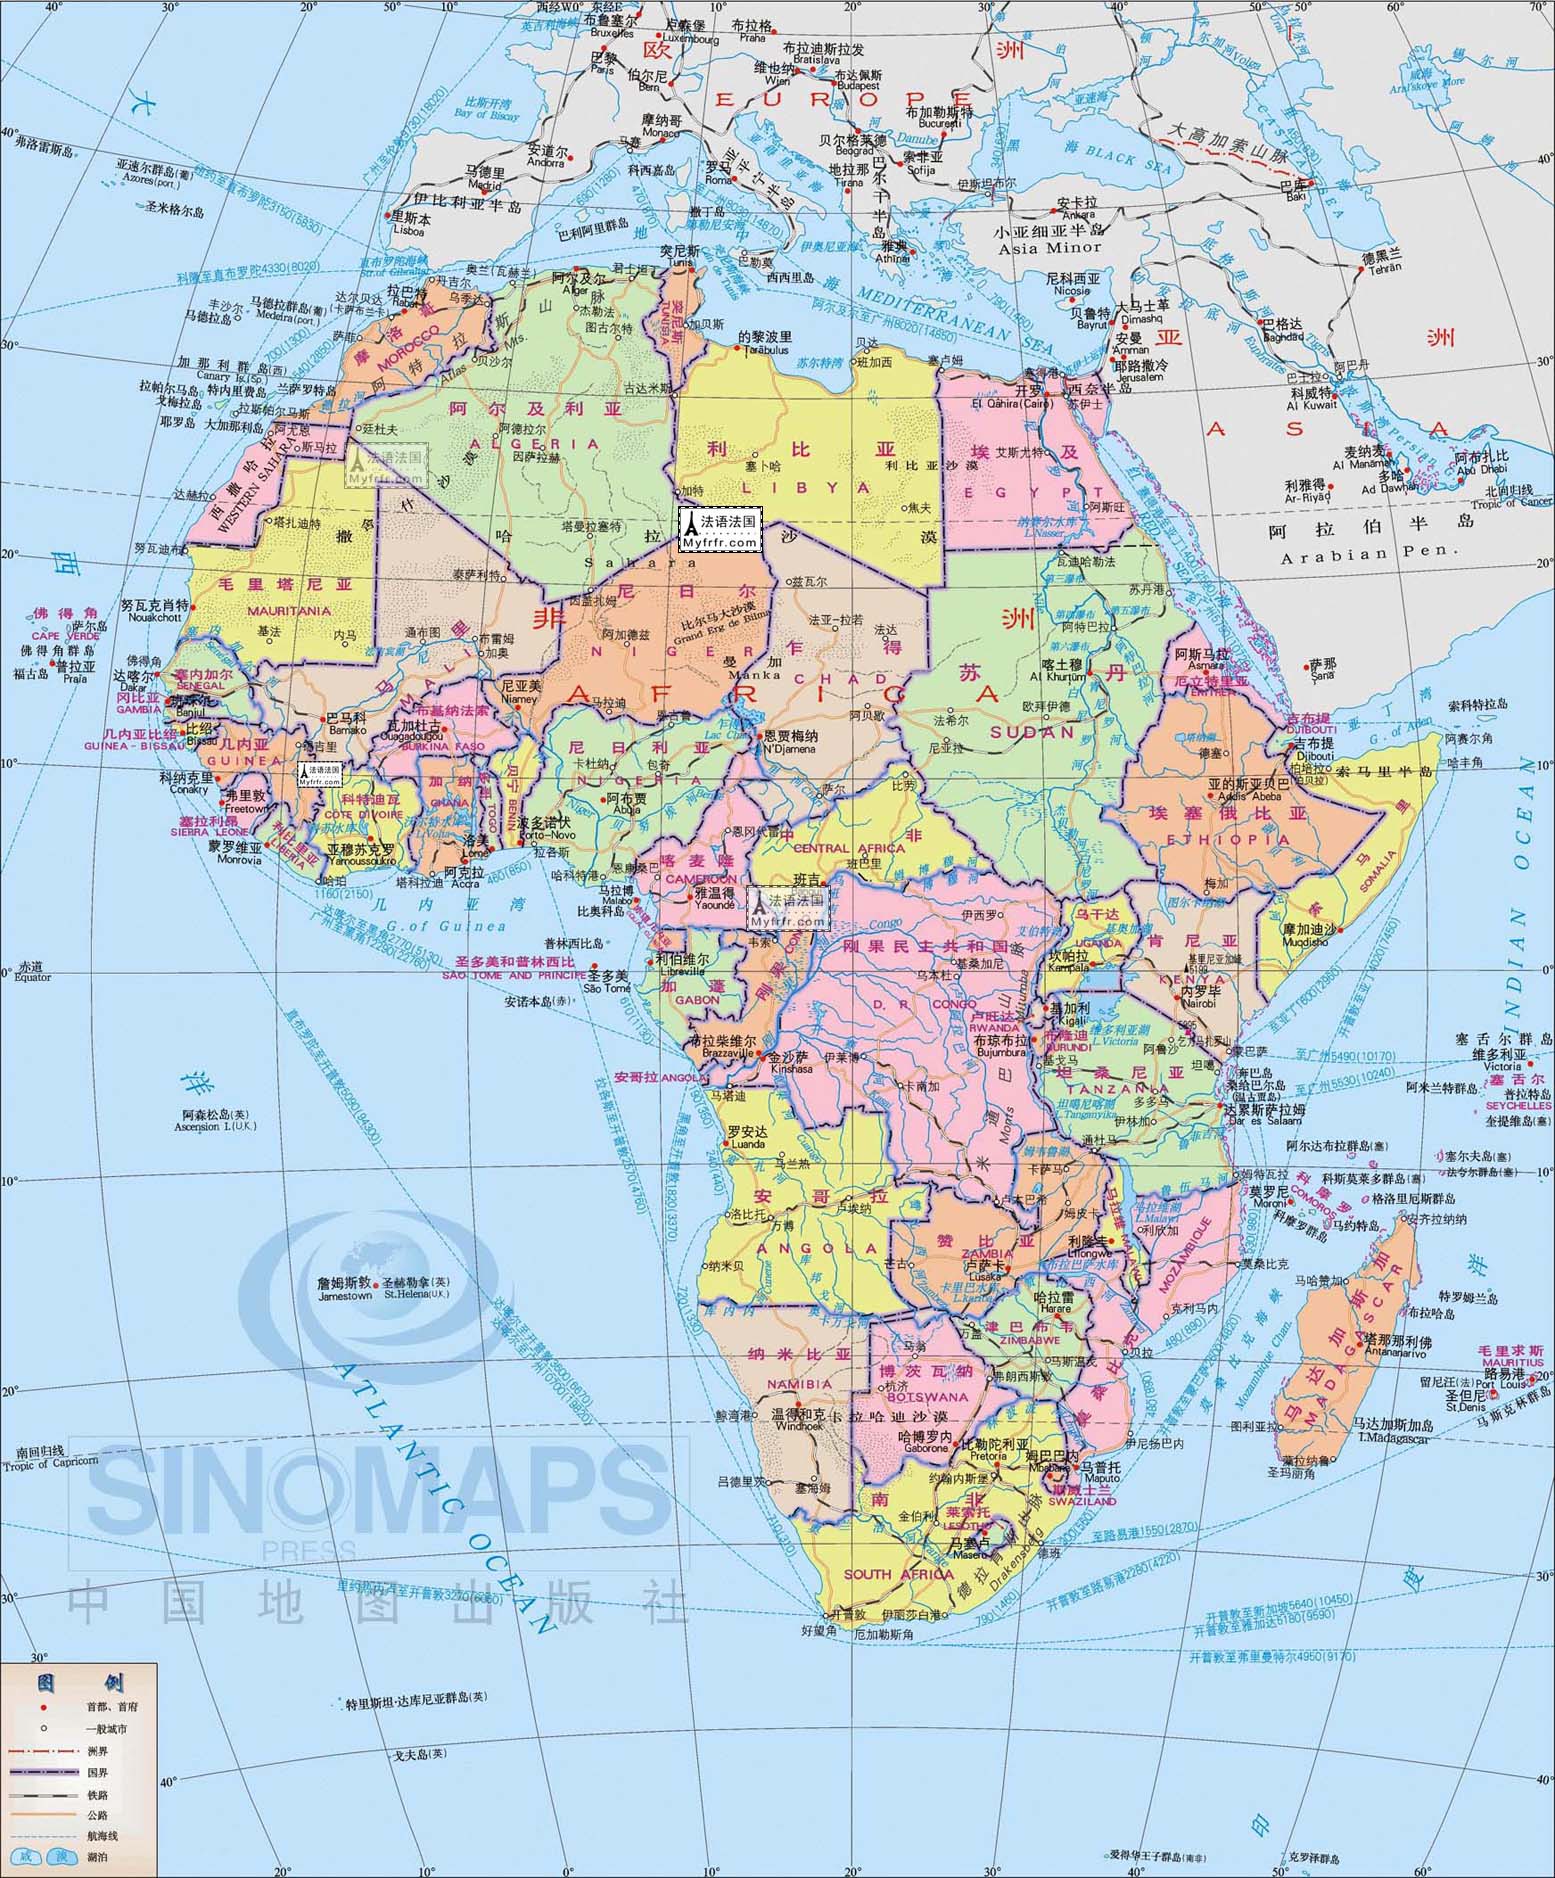 非洲地图『超大豪华版◎附带各国主要城市地理位置』